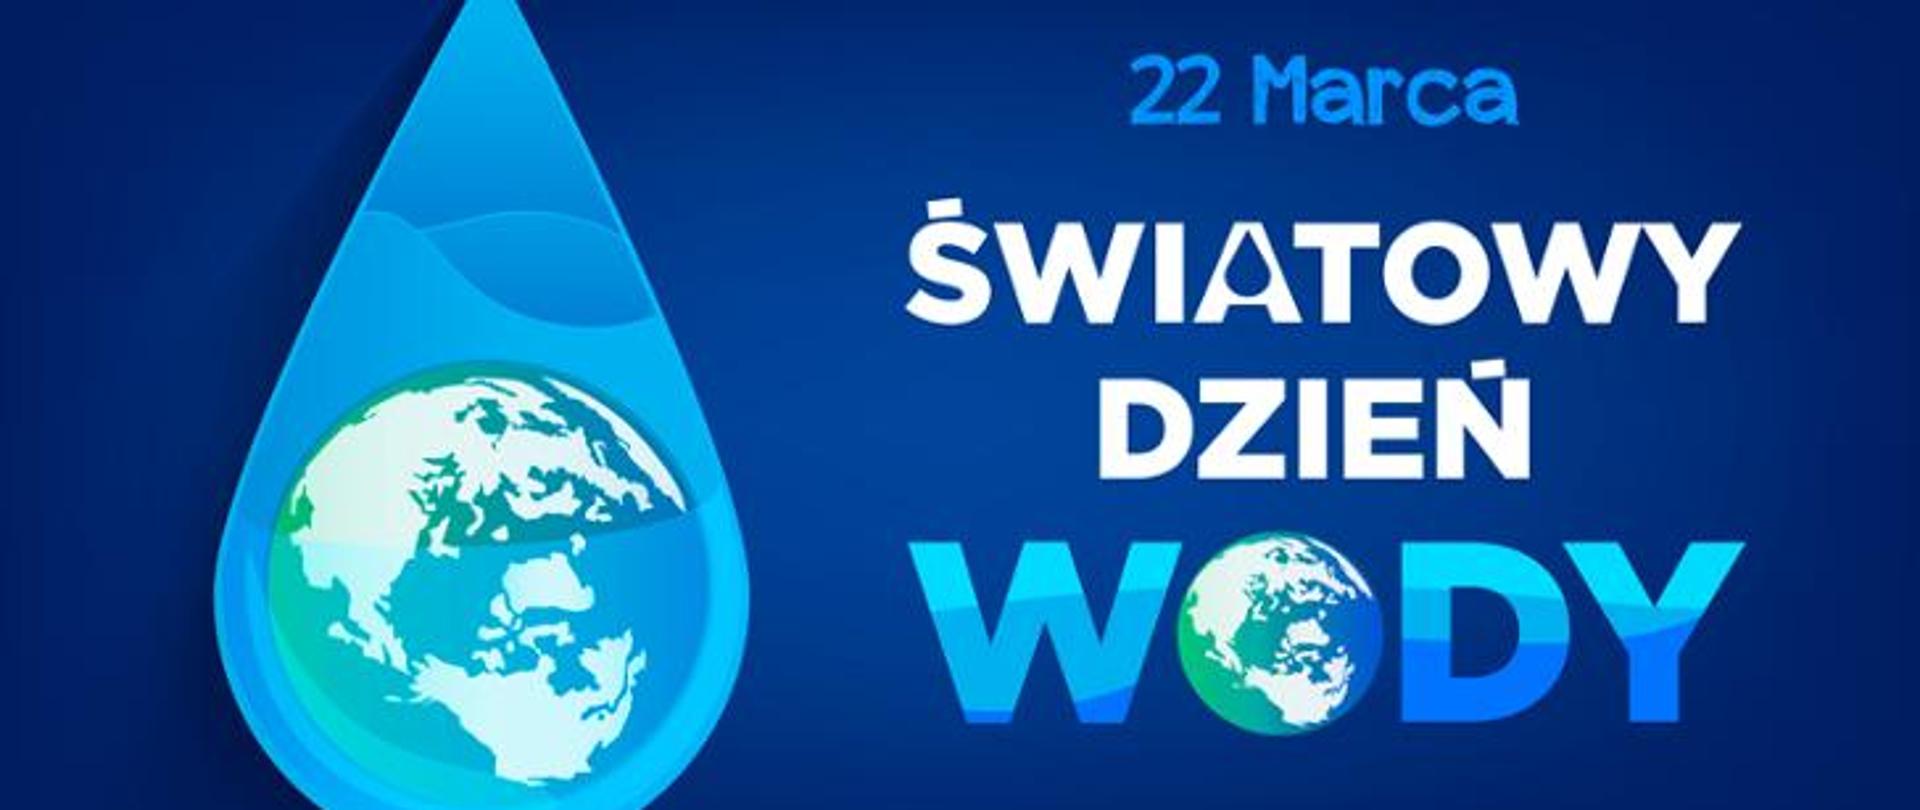 światowy dzień wody 22 marca